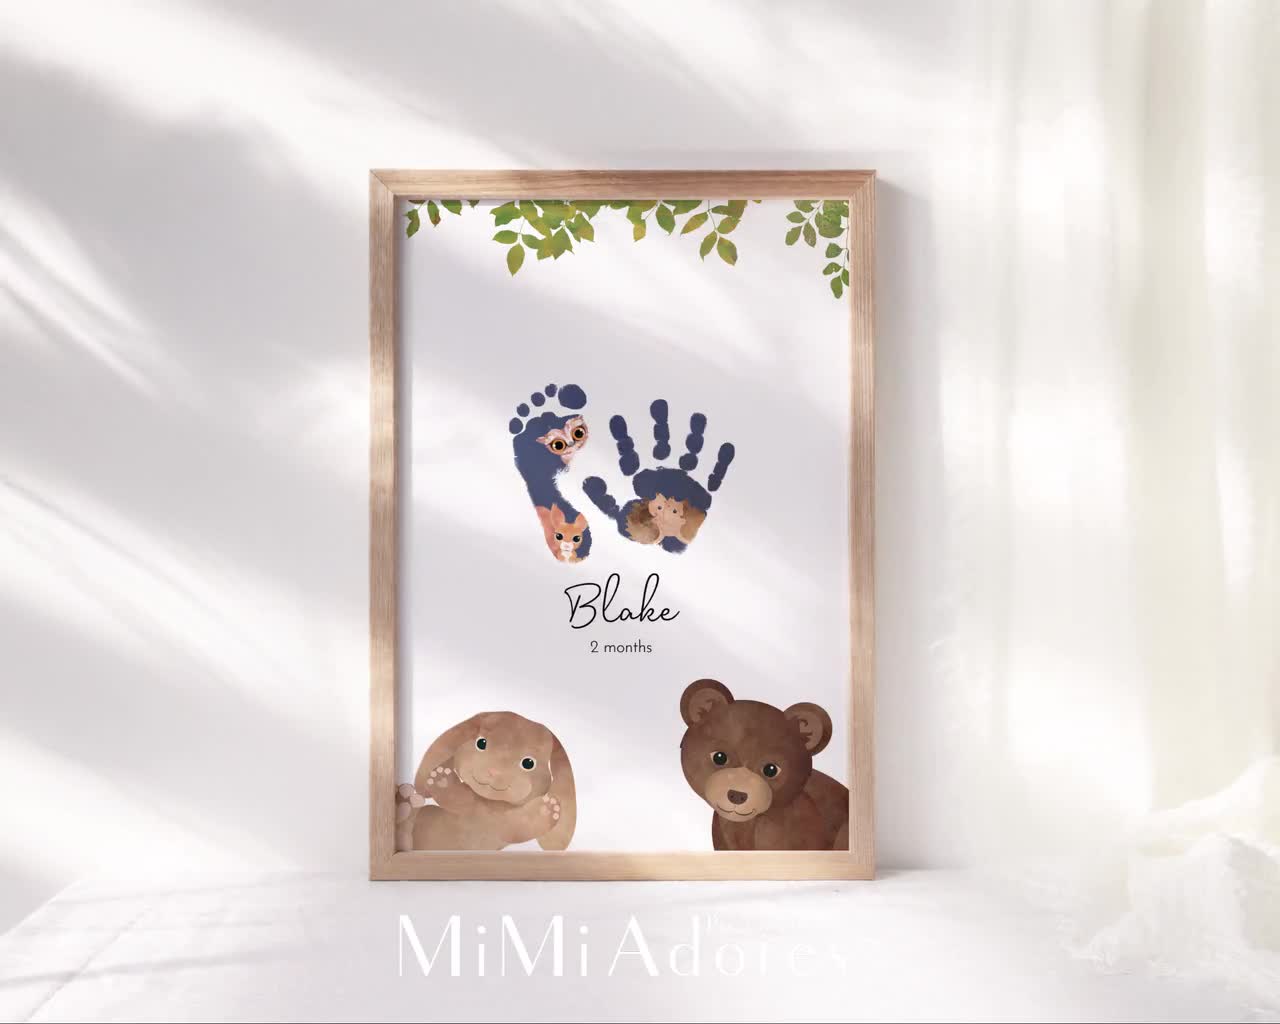 Kit souvenirs d'empreintes de mains et de fabricants d'empreintes de bébé,  cadeaux de nouvelle maman Baby Shower, cadres photo de bébé Milestone  Registre de bébé, décoration de chambre d'enfant